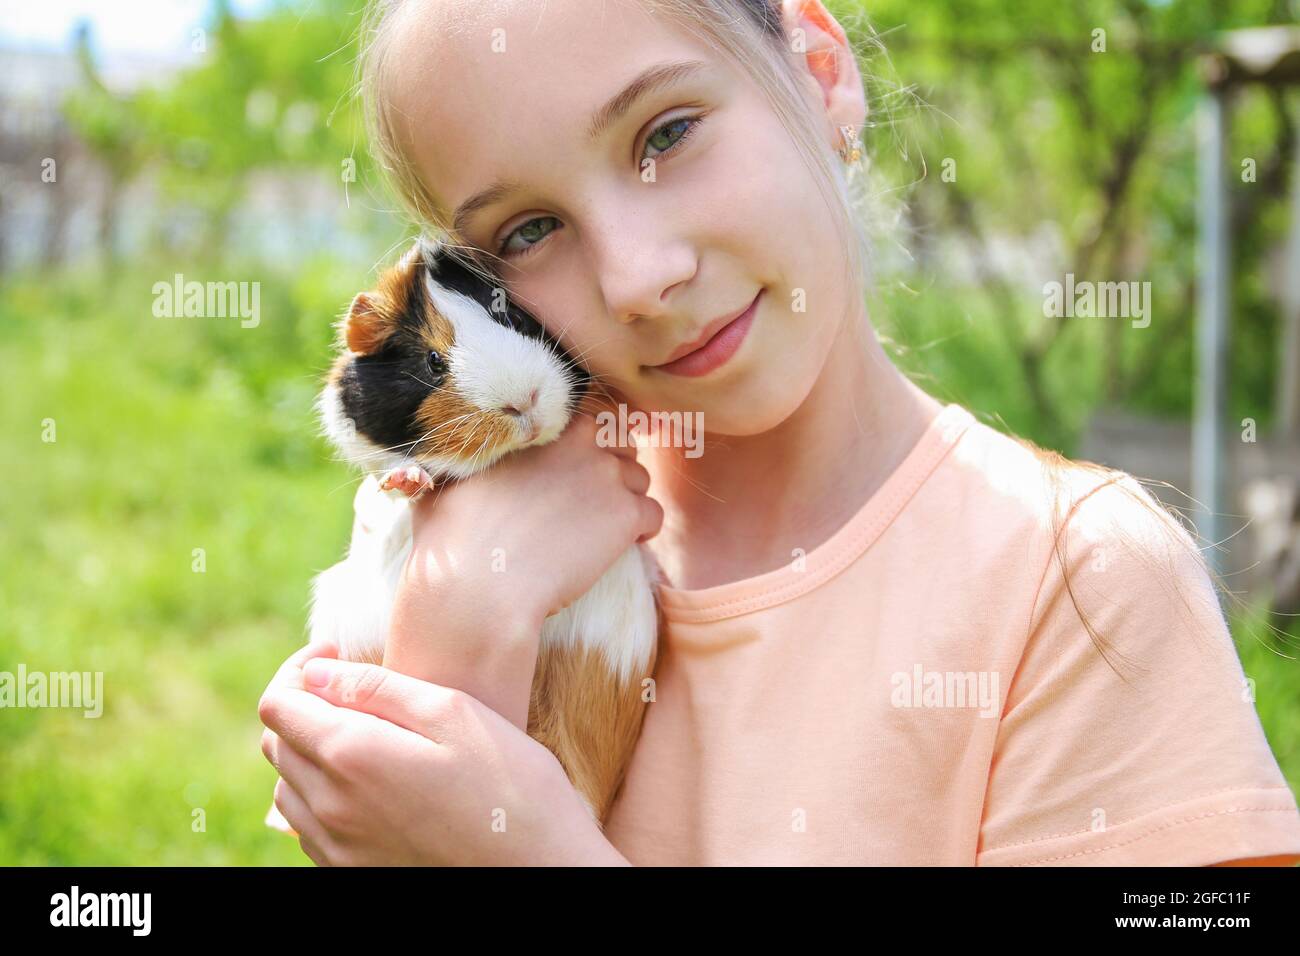 Mädchen hält Meerschweinchen in den Händen. Konzept des Kindes, das sich um das Haustier kümmert. Stockfoto